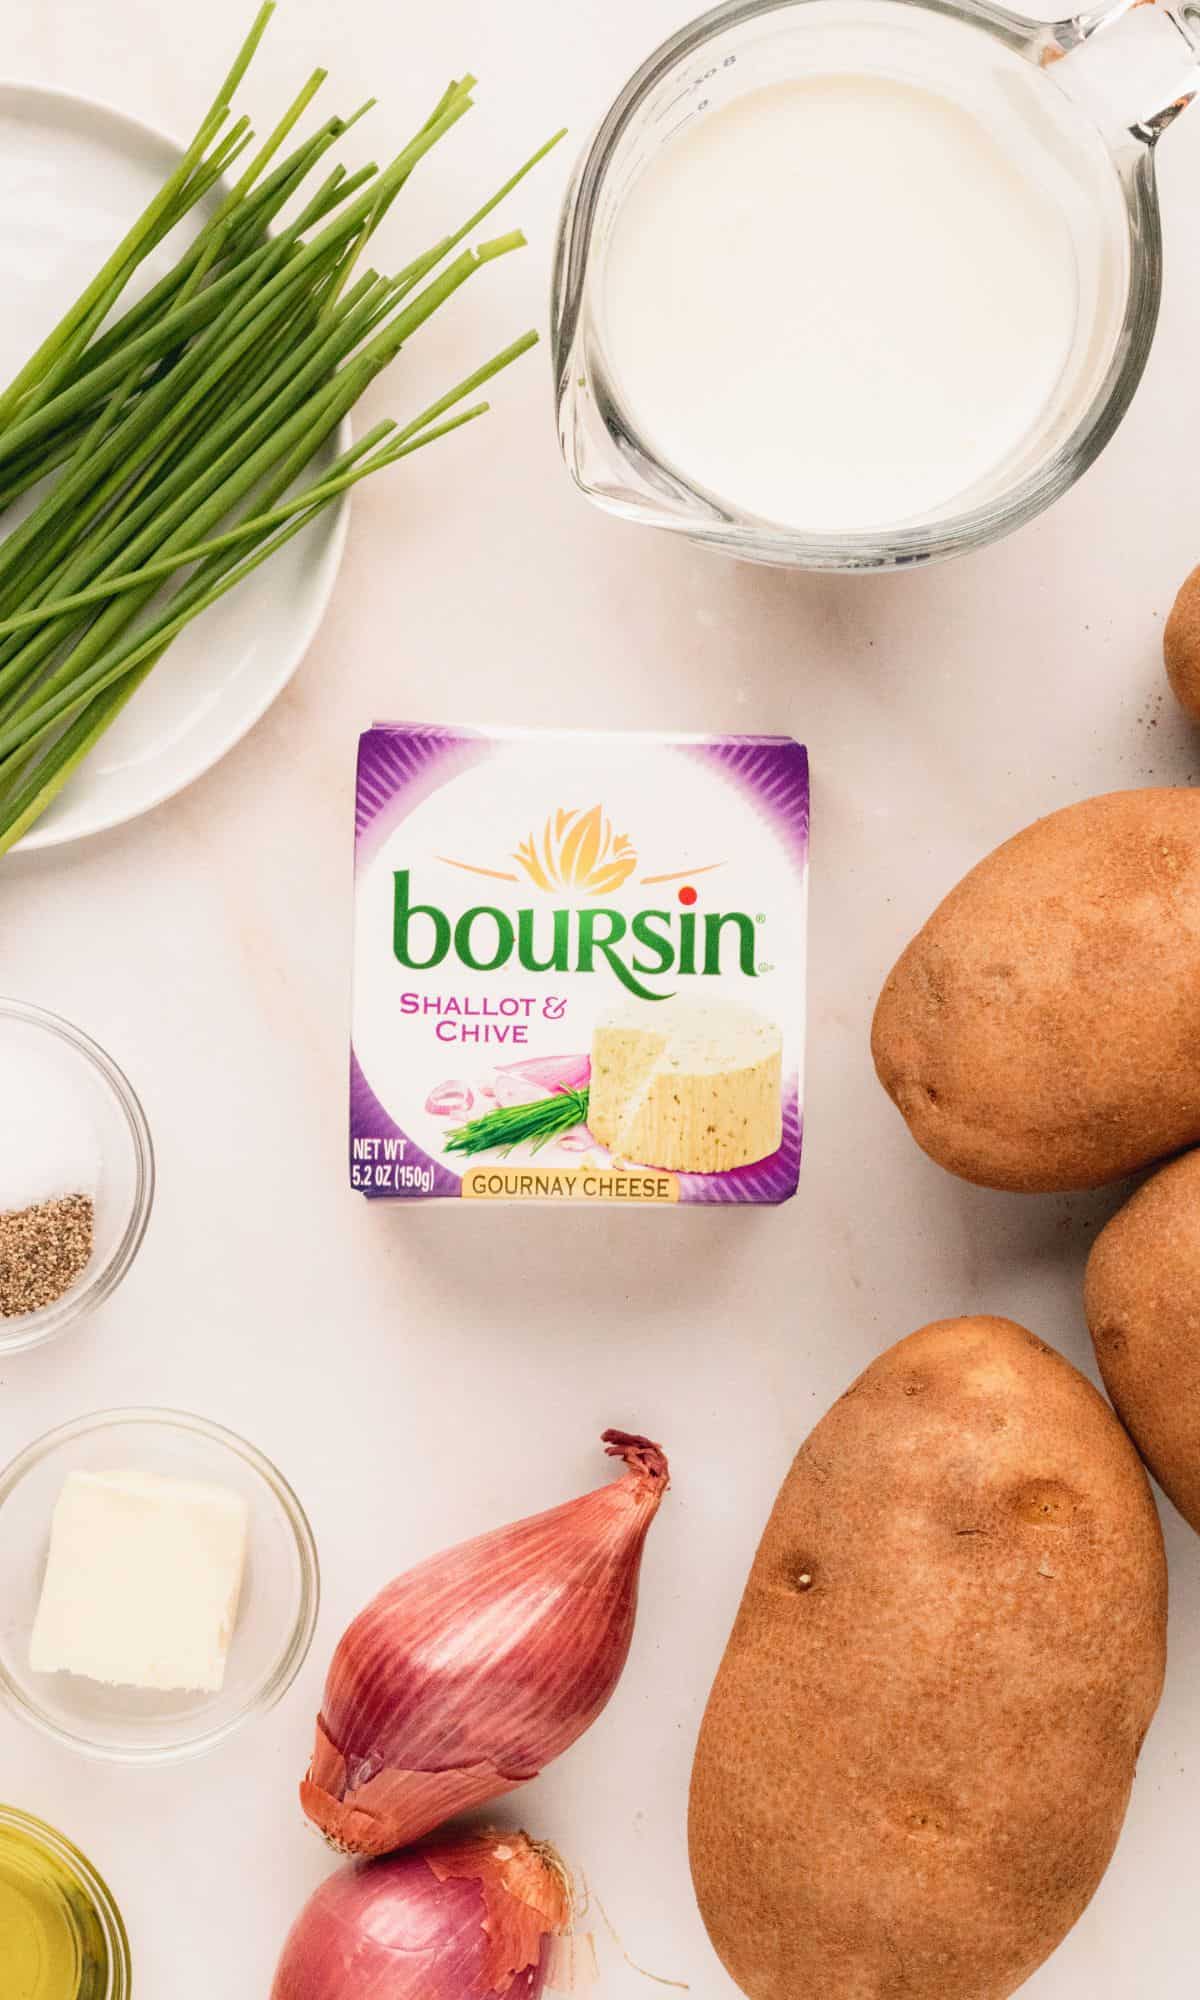 Boursin mashed potato ingredients.